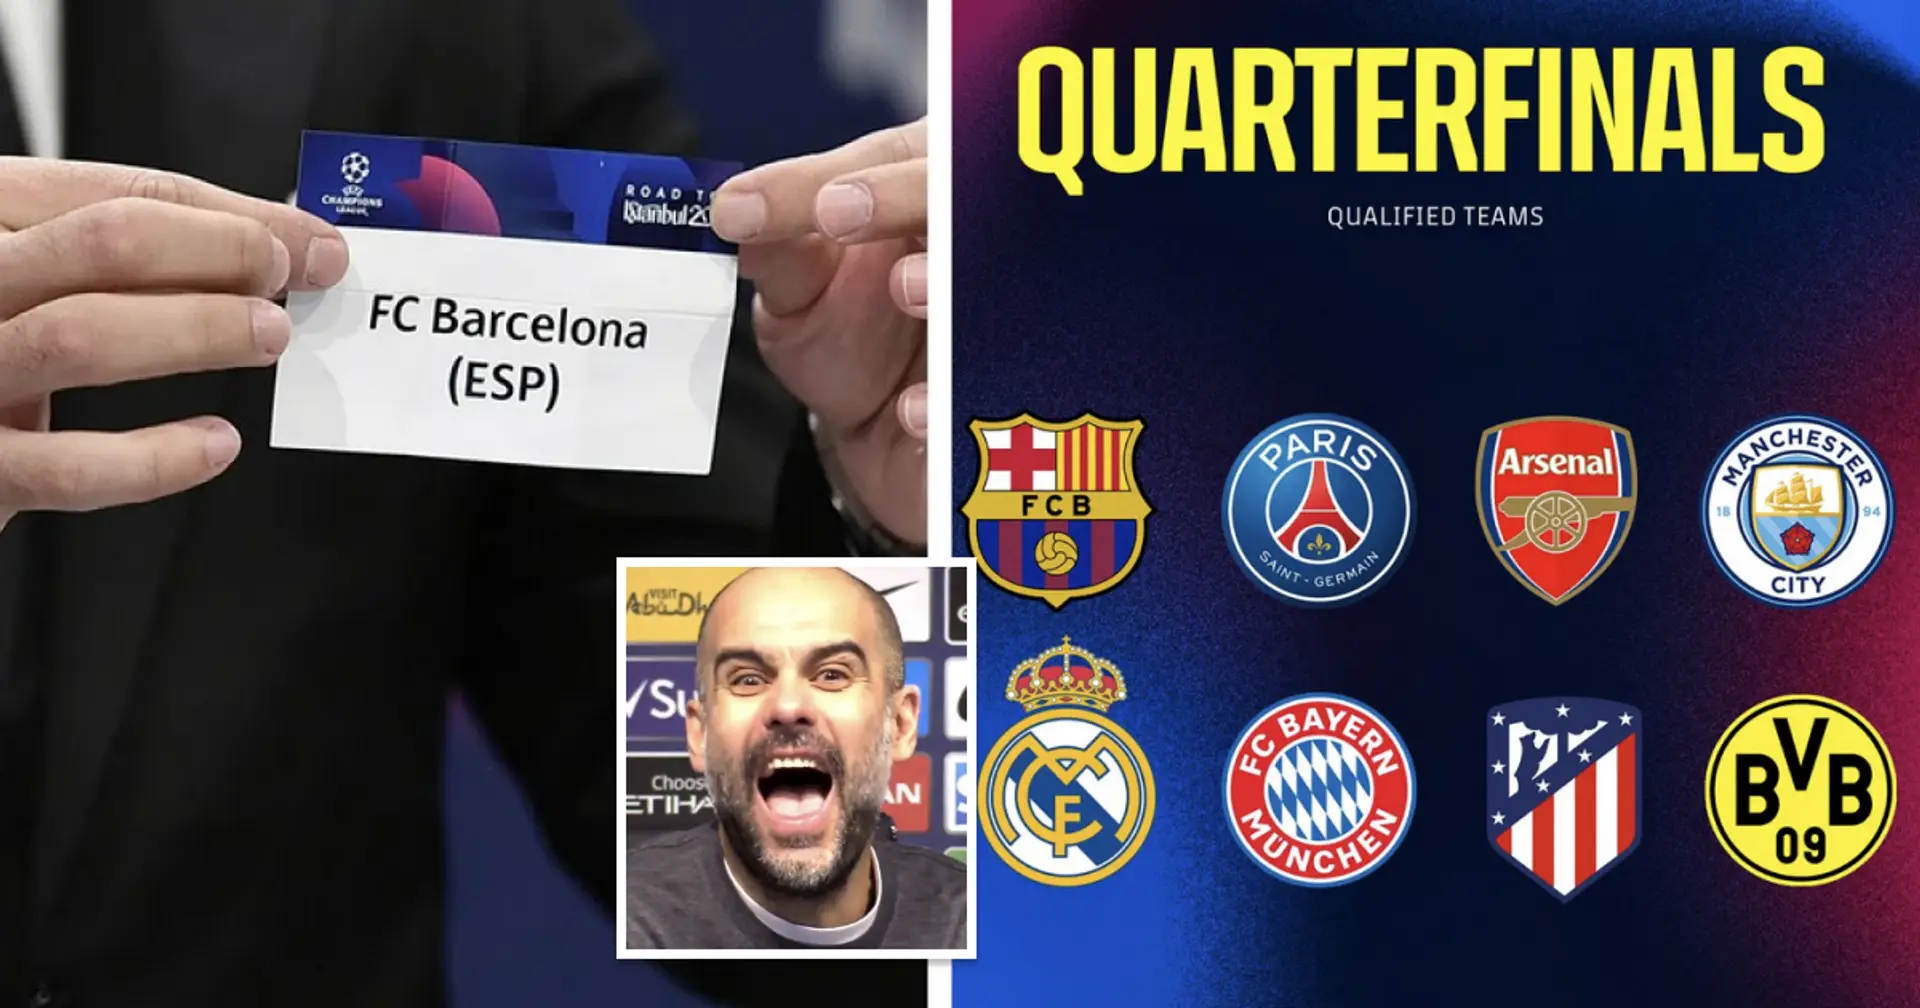 Clasificación de los posibles rivales del Barça en la Liga de Campeones del más al menos deseado